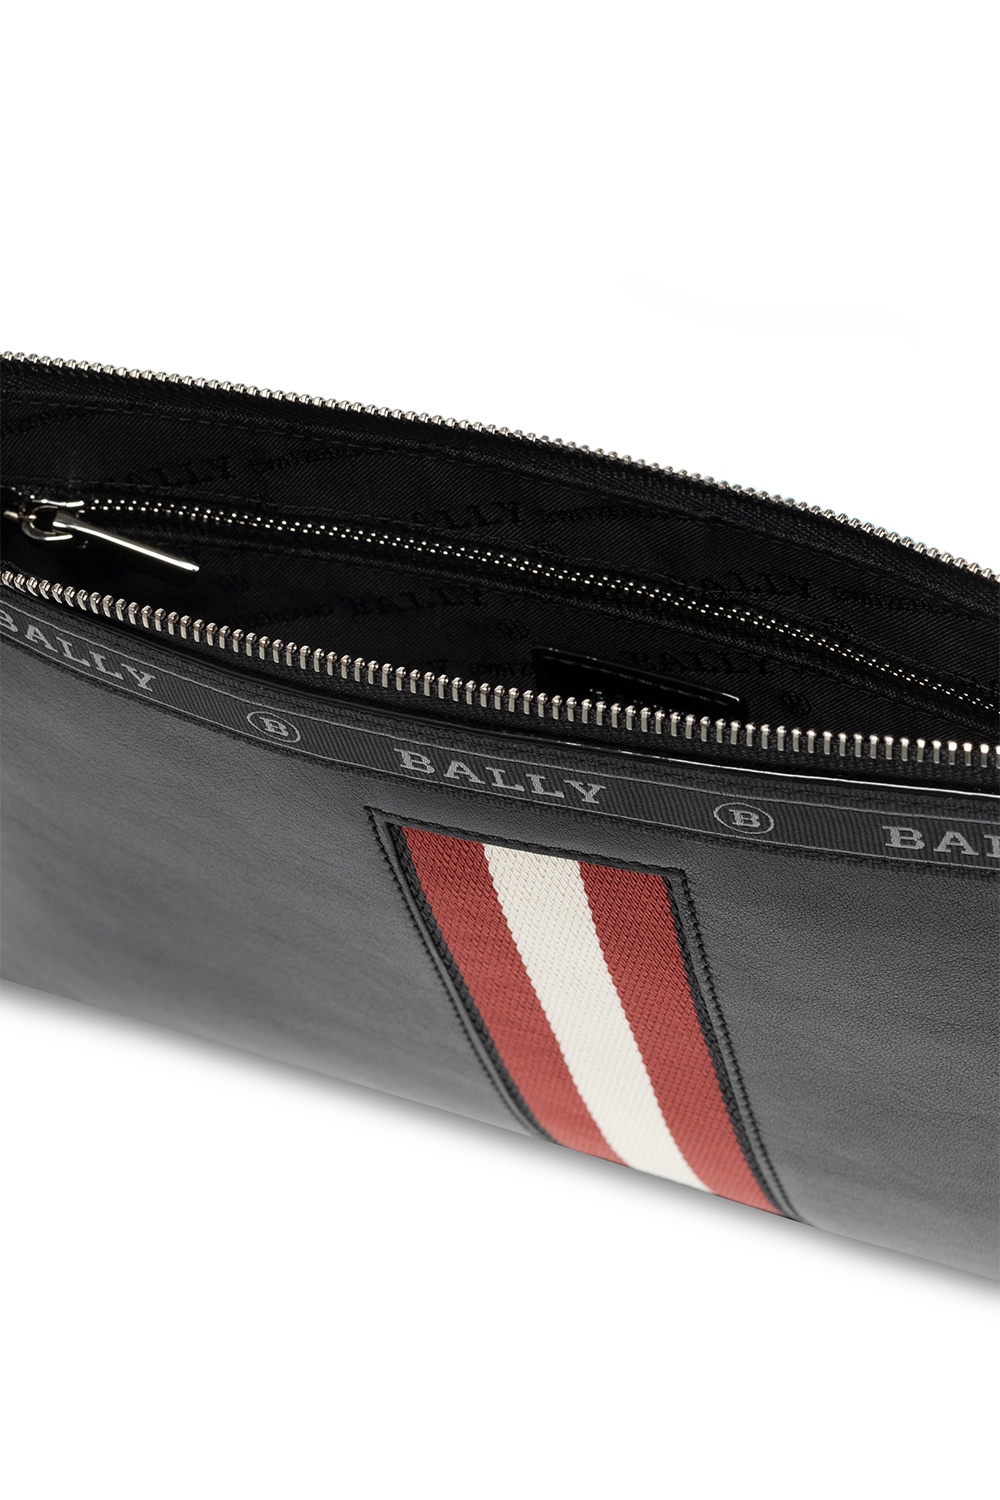 Bally ‘Benery’ pouch | Men's Bags | Vitkac